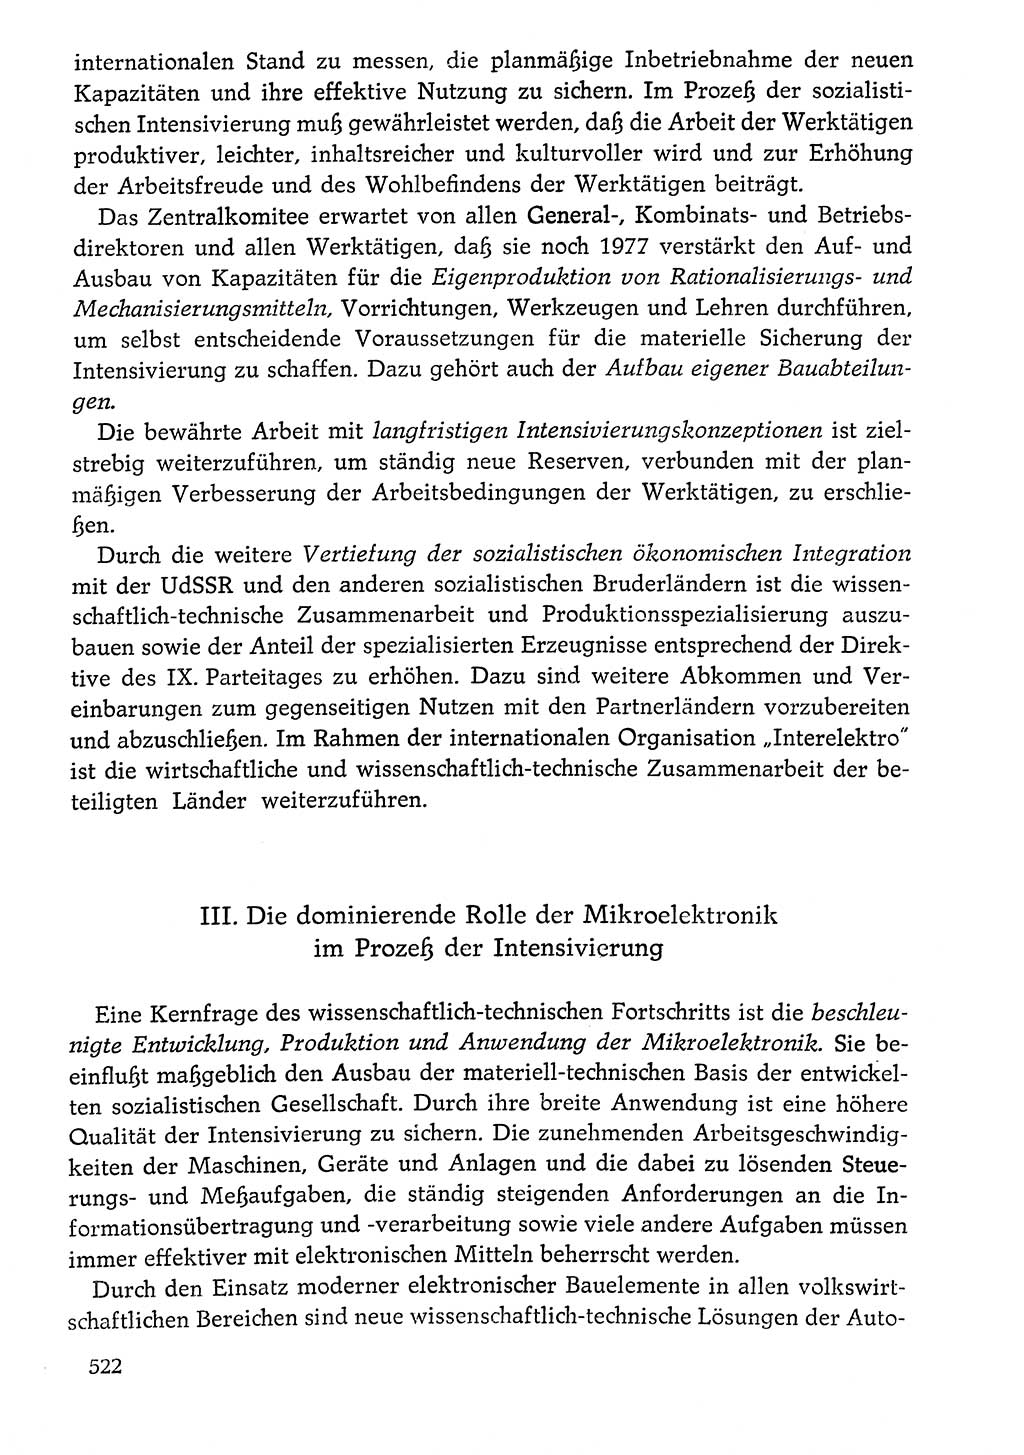 Dokumente der Sozialistischen Einheitspartei Deutschlands (SED) [Deutsche Demokratische Republik (DDR)] 1976-1977, Seite 522 (Dok. SED DDR 1976-1977, S. 522)